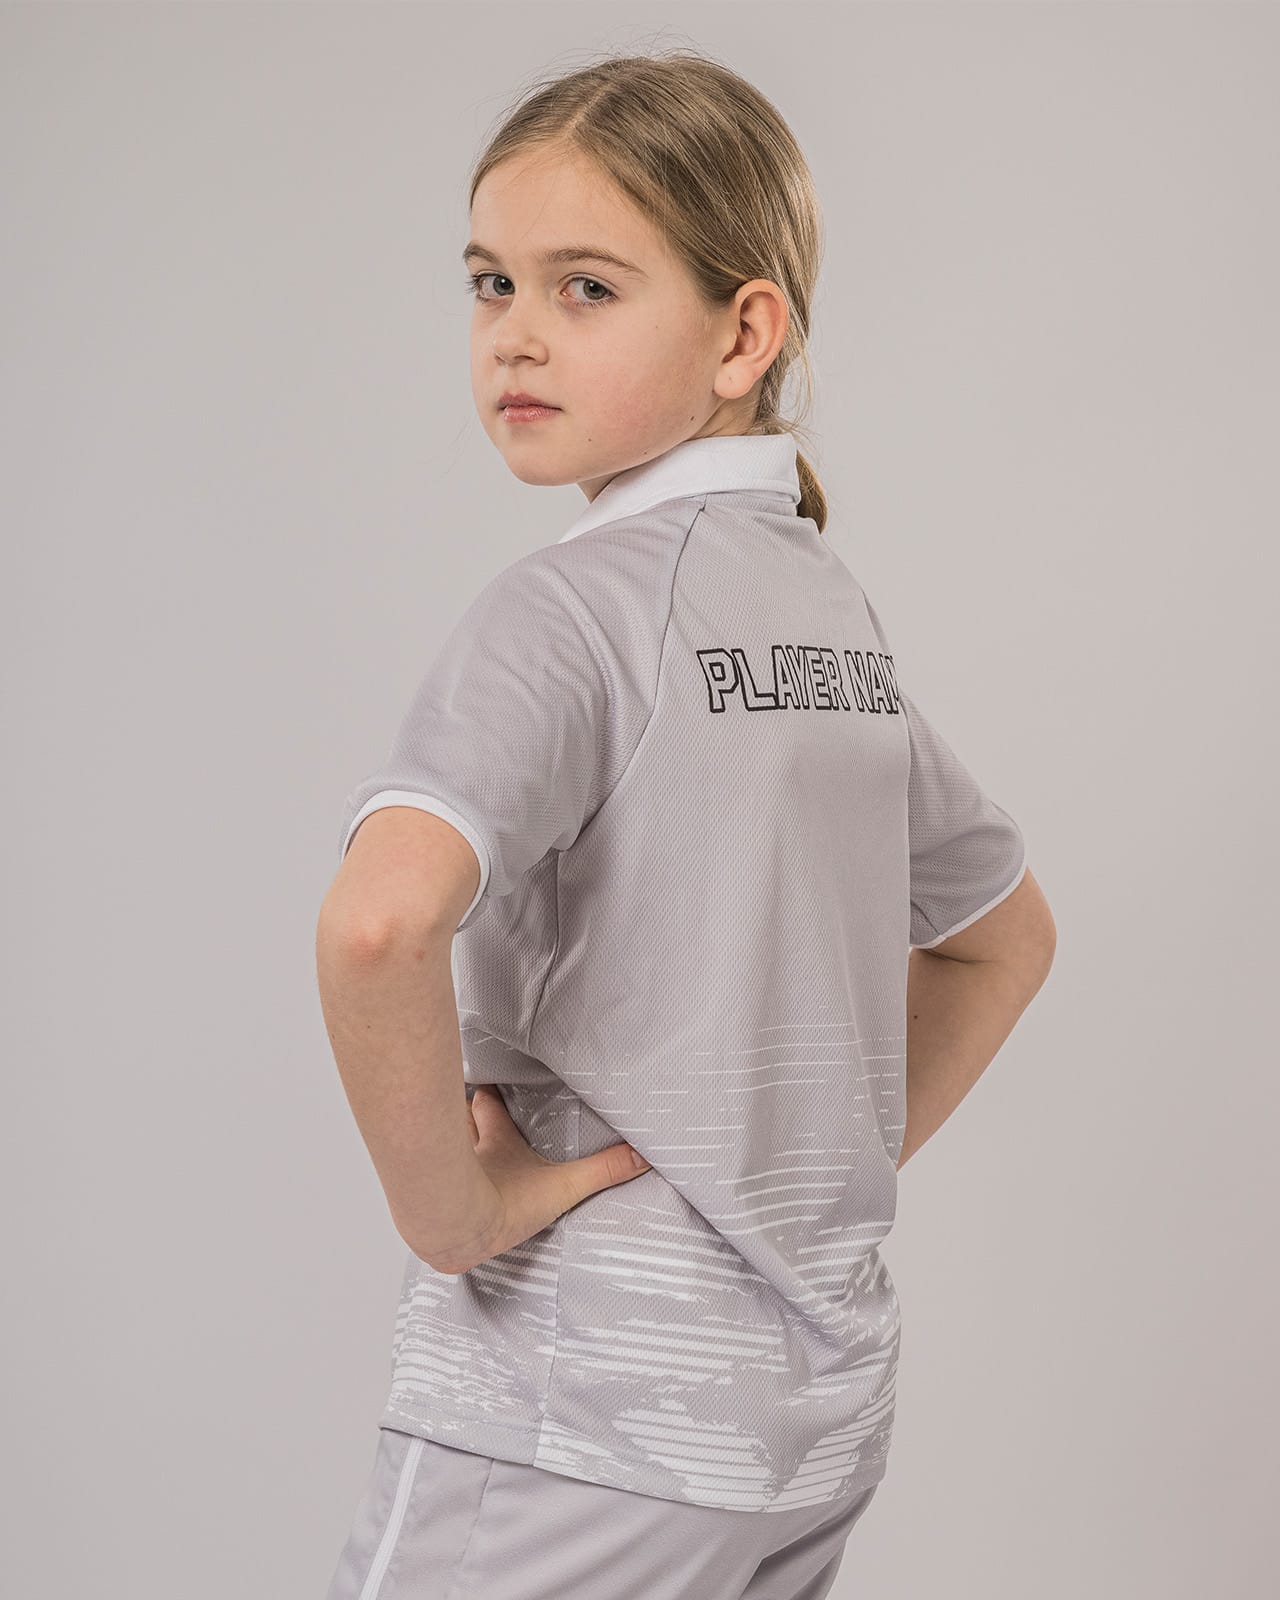 Multisport polo shirt for children